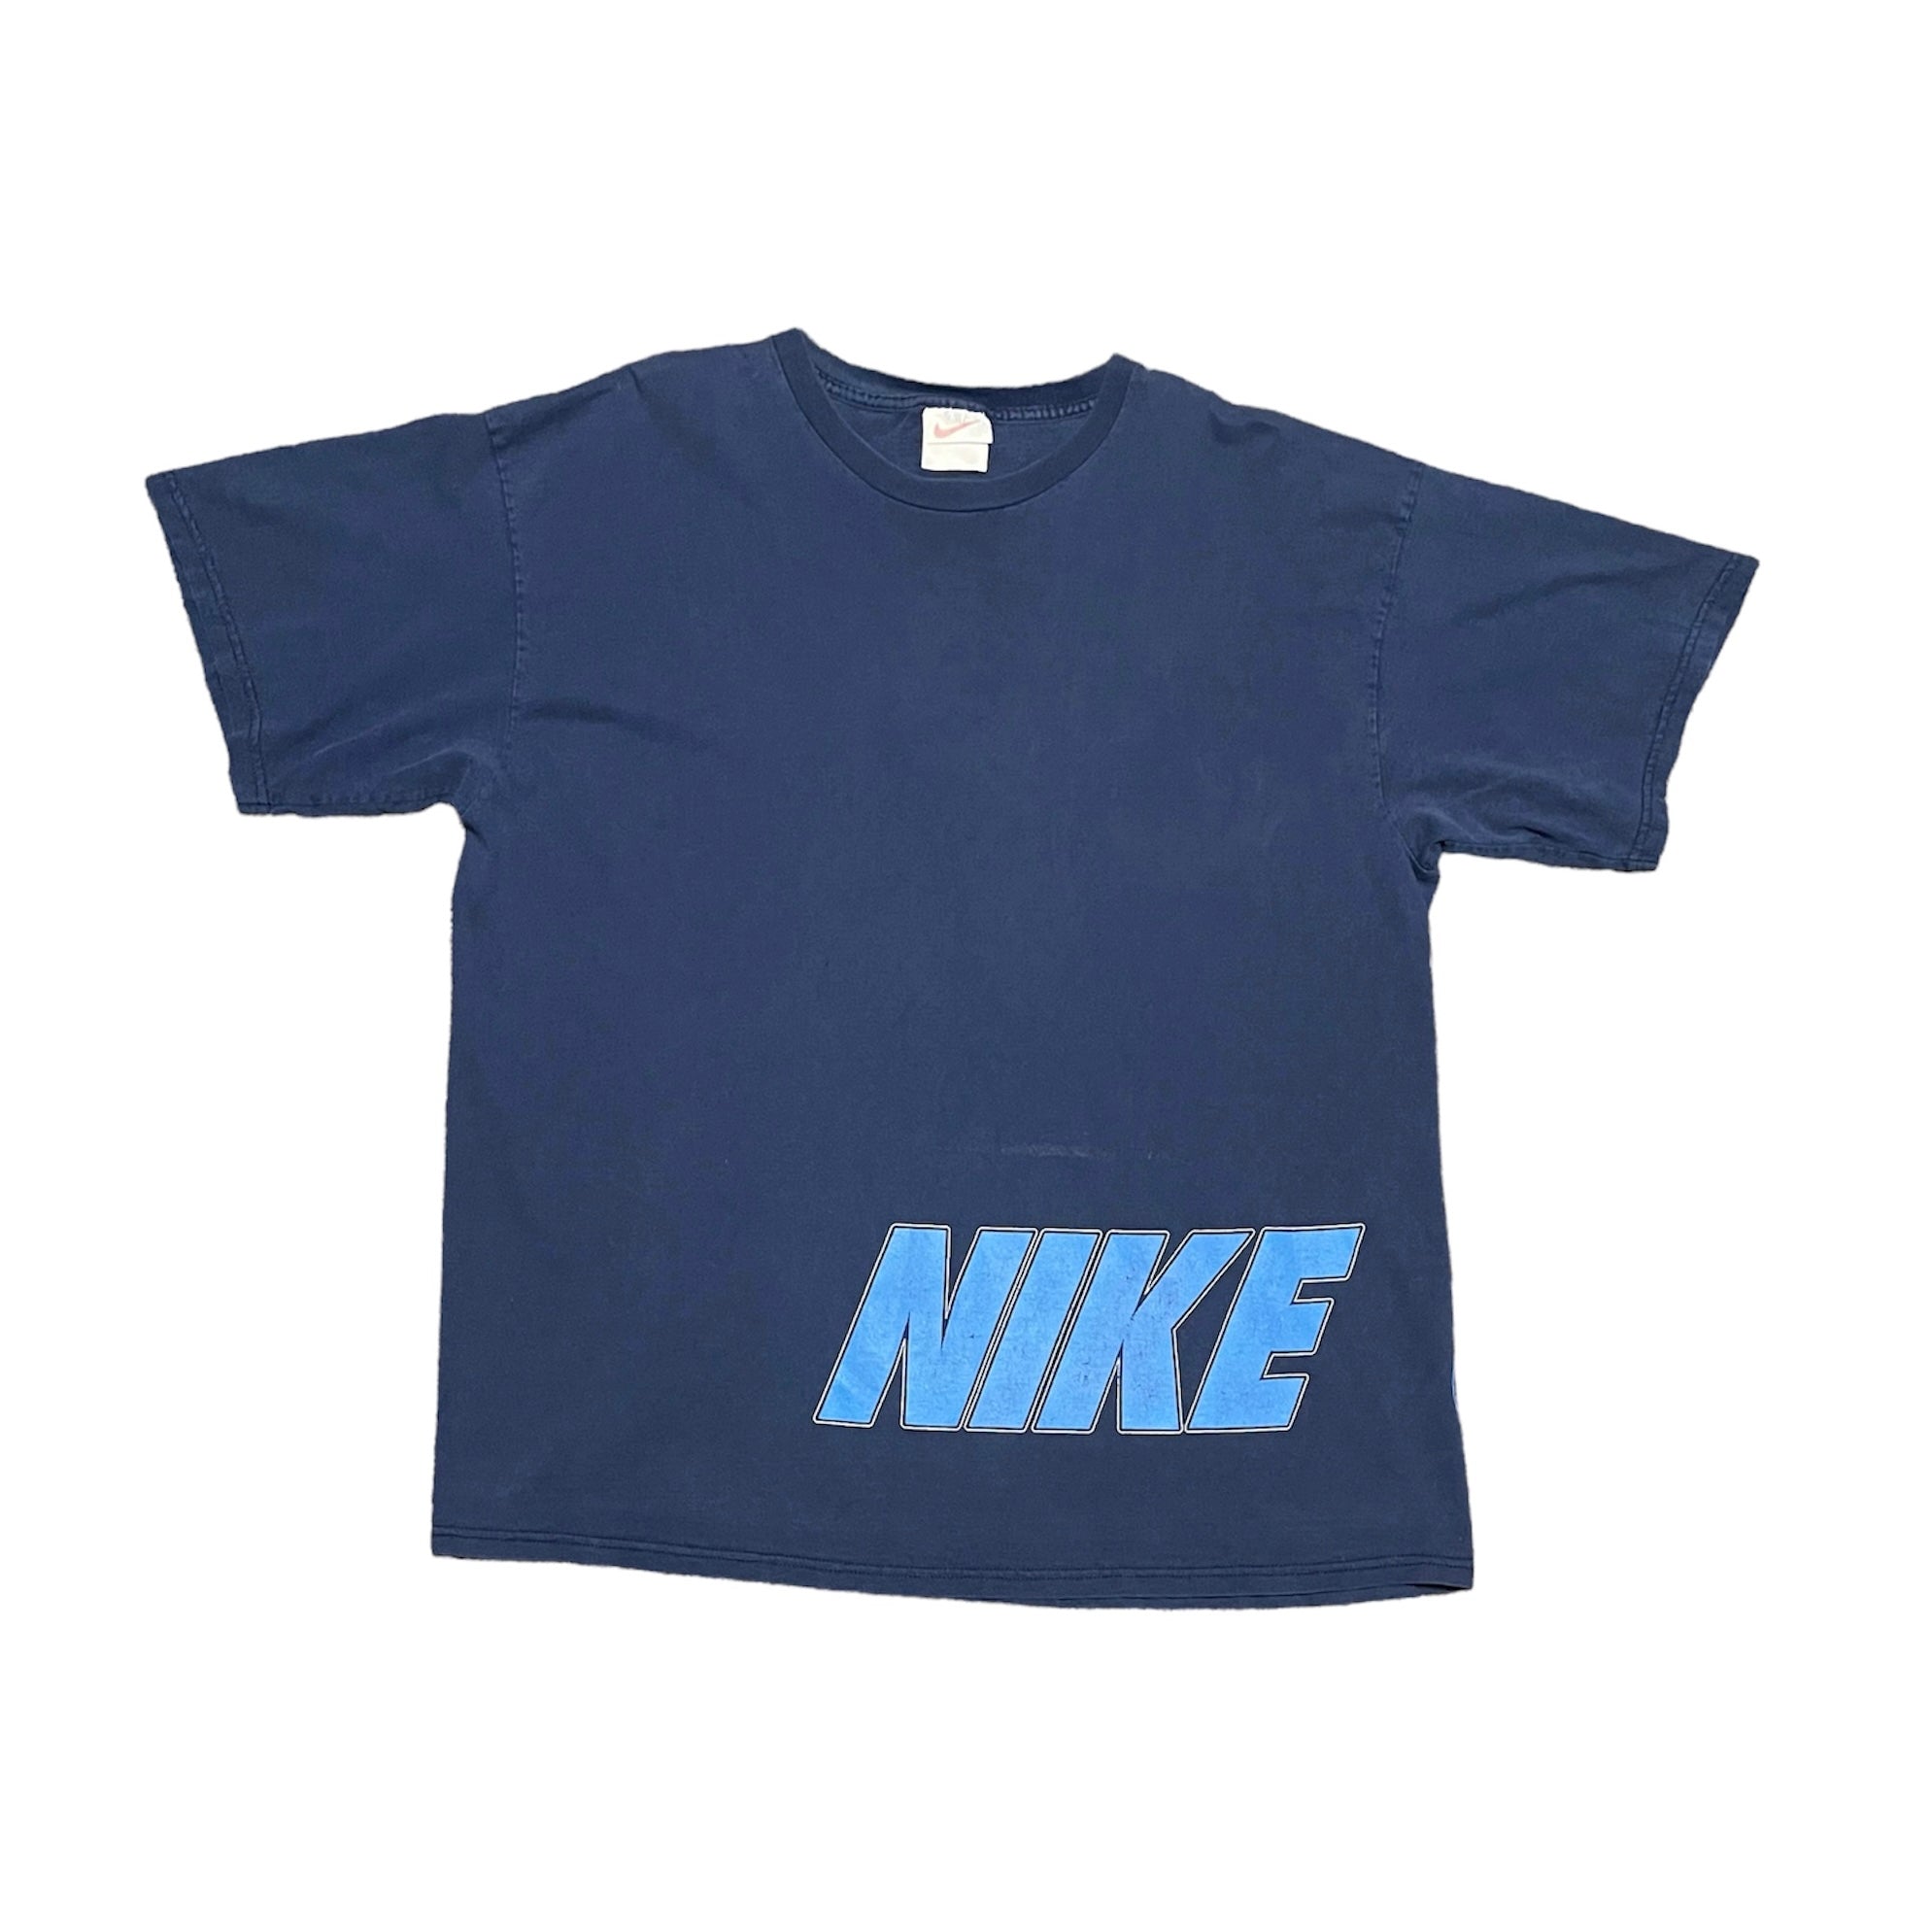 Vintage Nike T-Shirt – Continuous Vintage